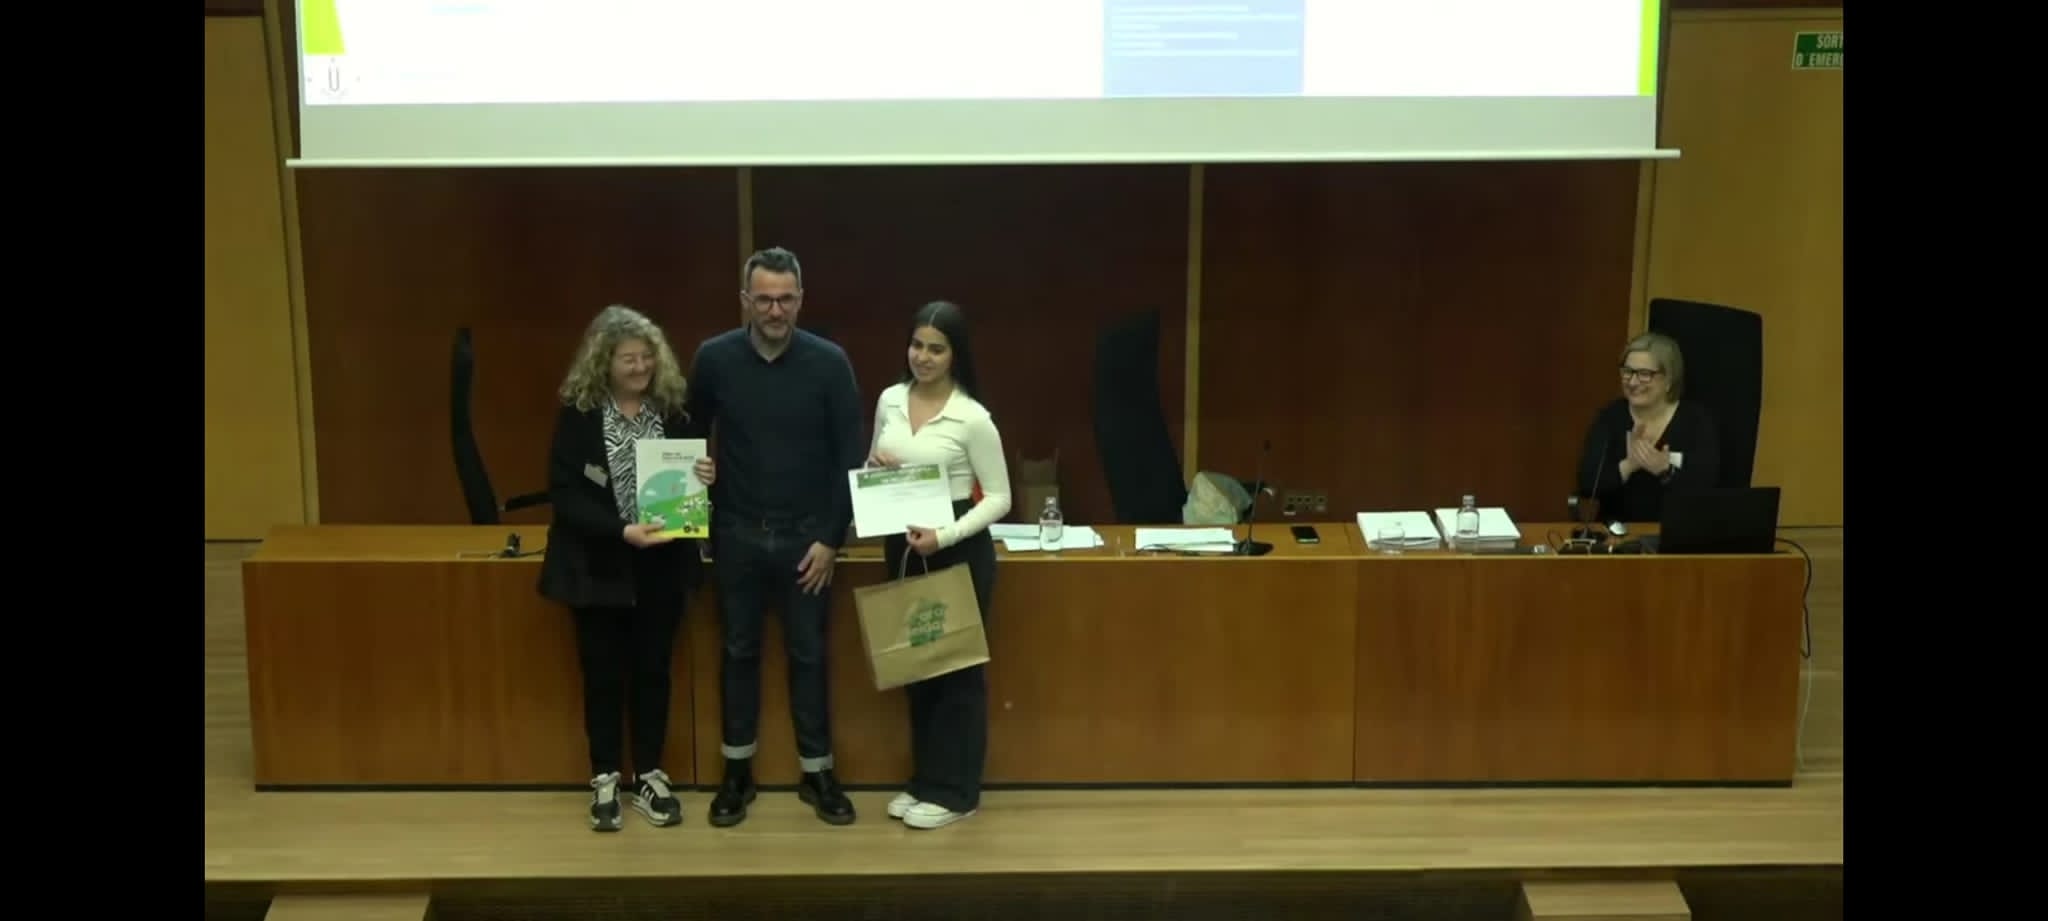 L'alumna Clàudia Sánchez rep el premi a la UdL.